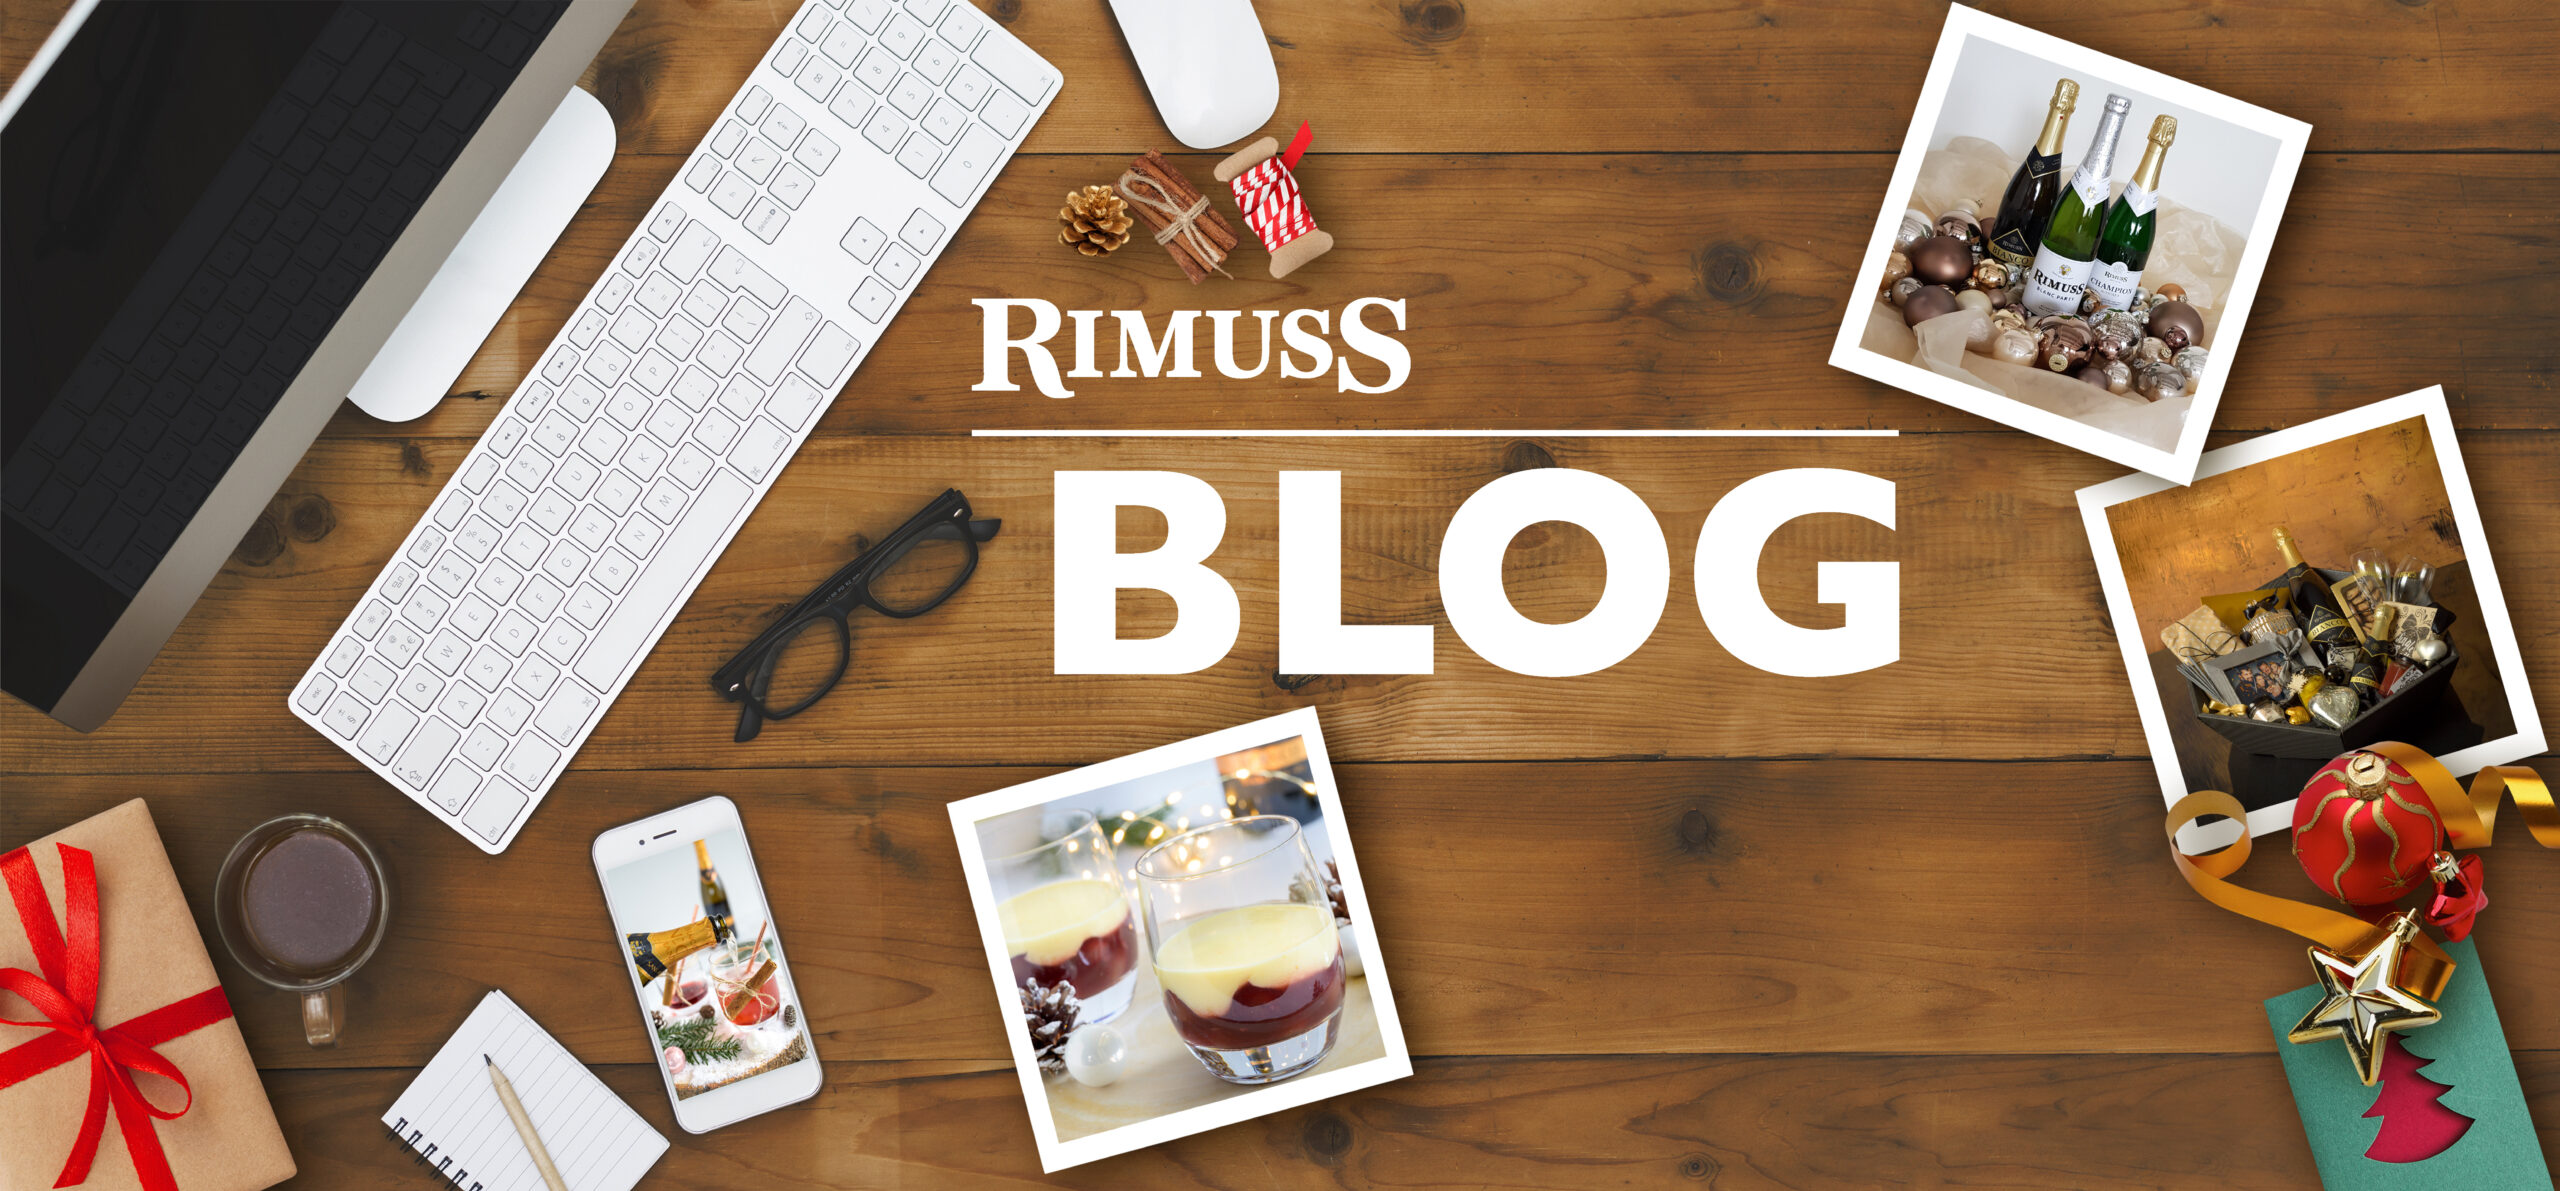 Rimuss Blog mit spannenden Themen und Ideen für Advents und Weihnachtsapéros